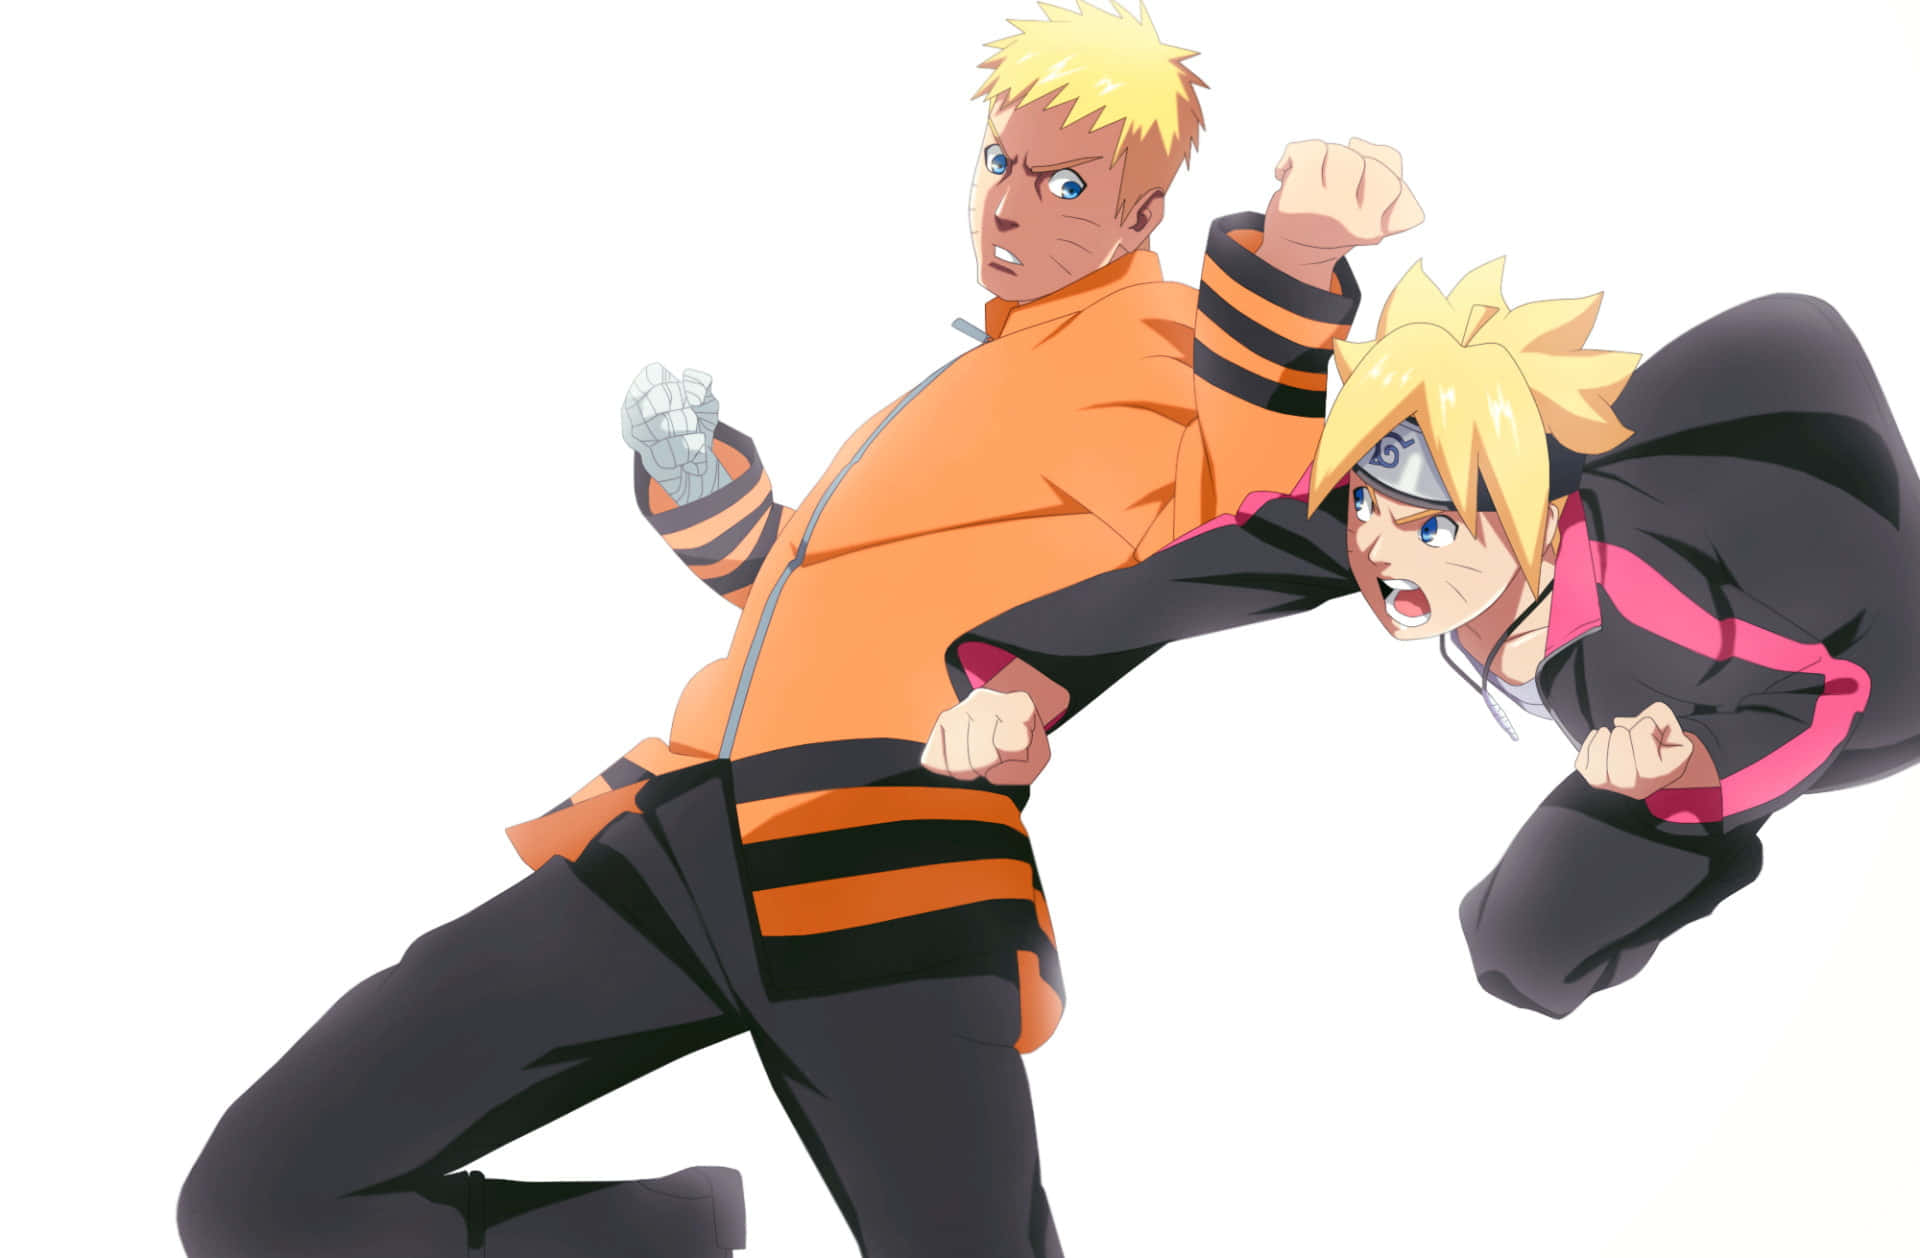 The bond between Boruto&Naruto is stronger than ever. Wallpaper